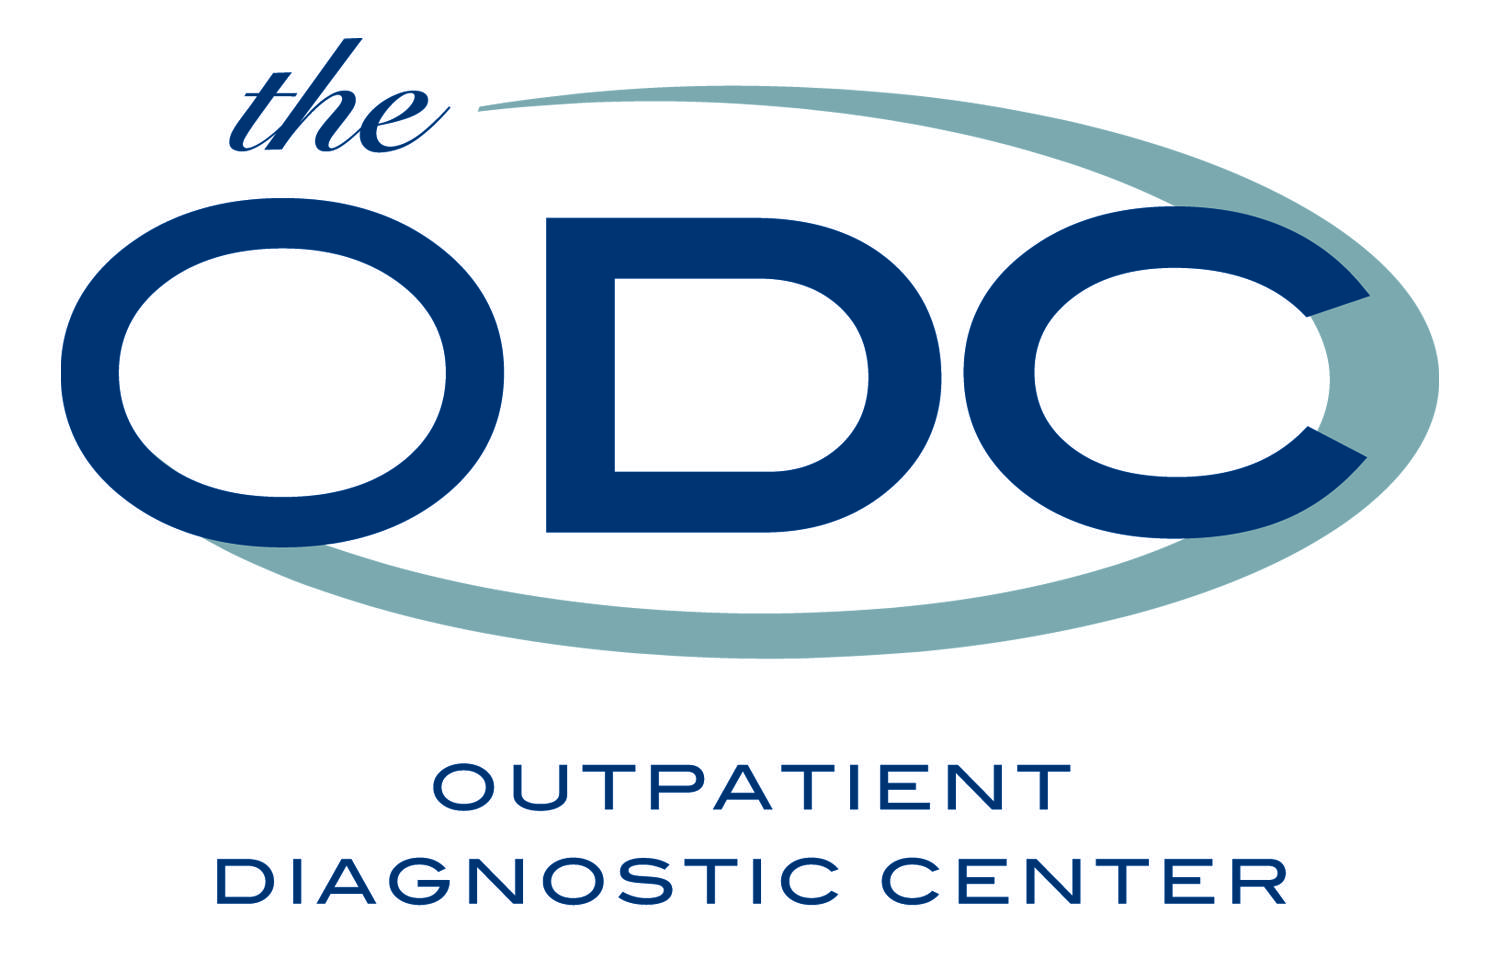 Beaumont Outpatient Logo - Outpatient Diagnostic Center Logo ODC. PACS Radiology